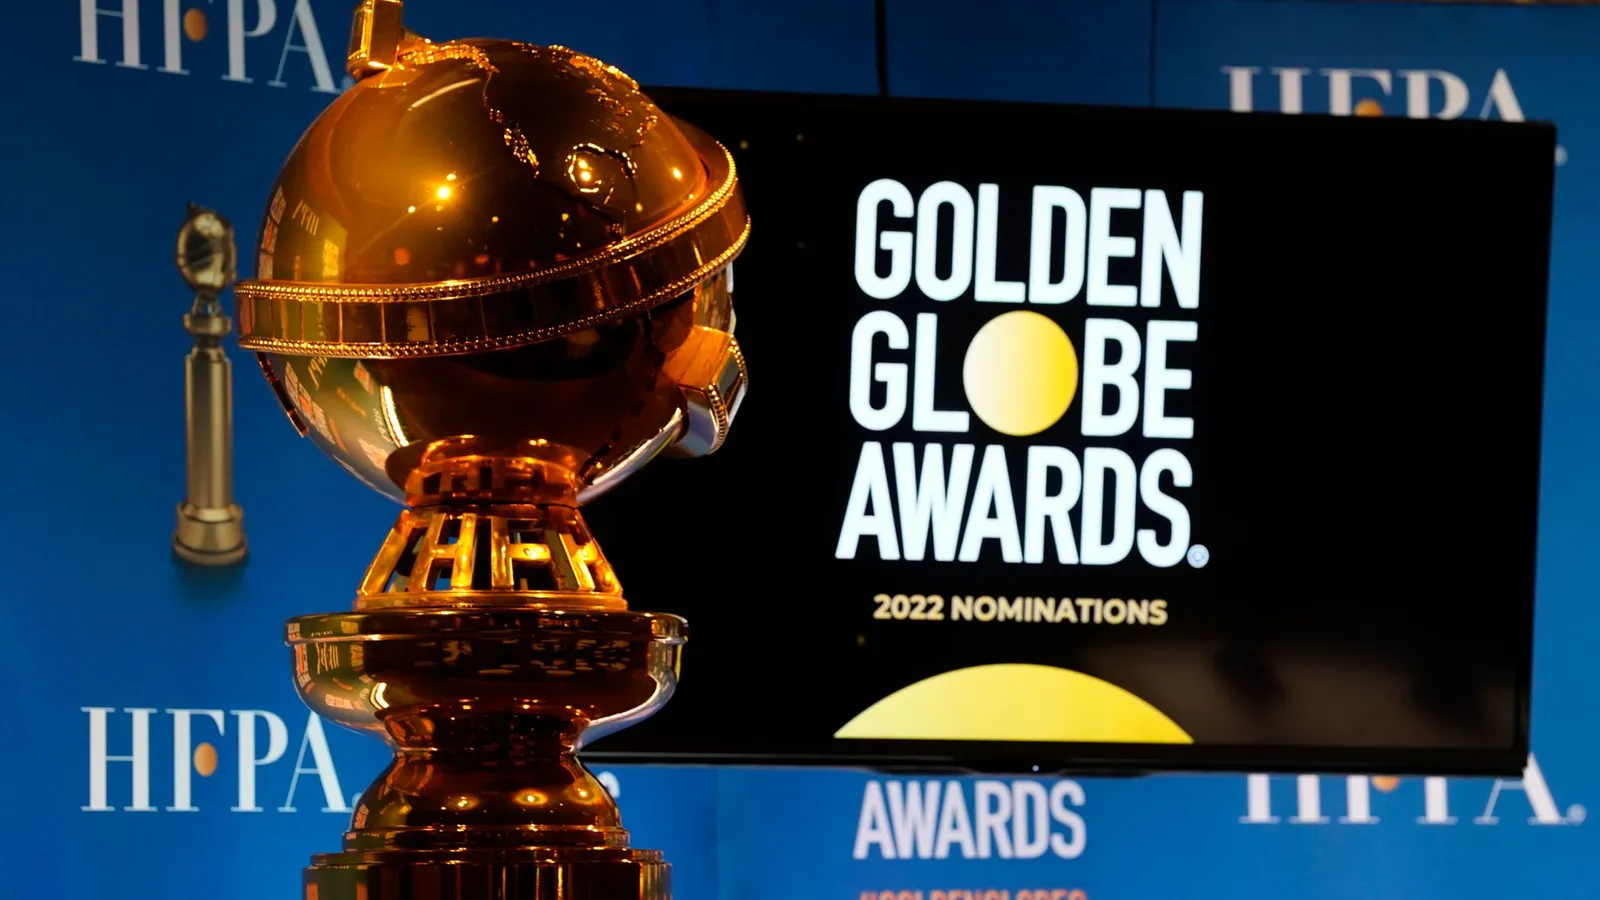 Hadir Berbeda, Ini Fakta Kontroversi Golden Globes 2022 yang Diboikot 